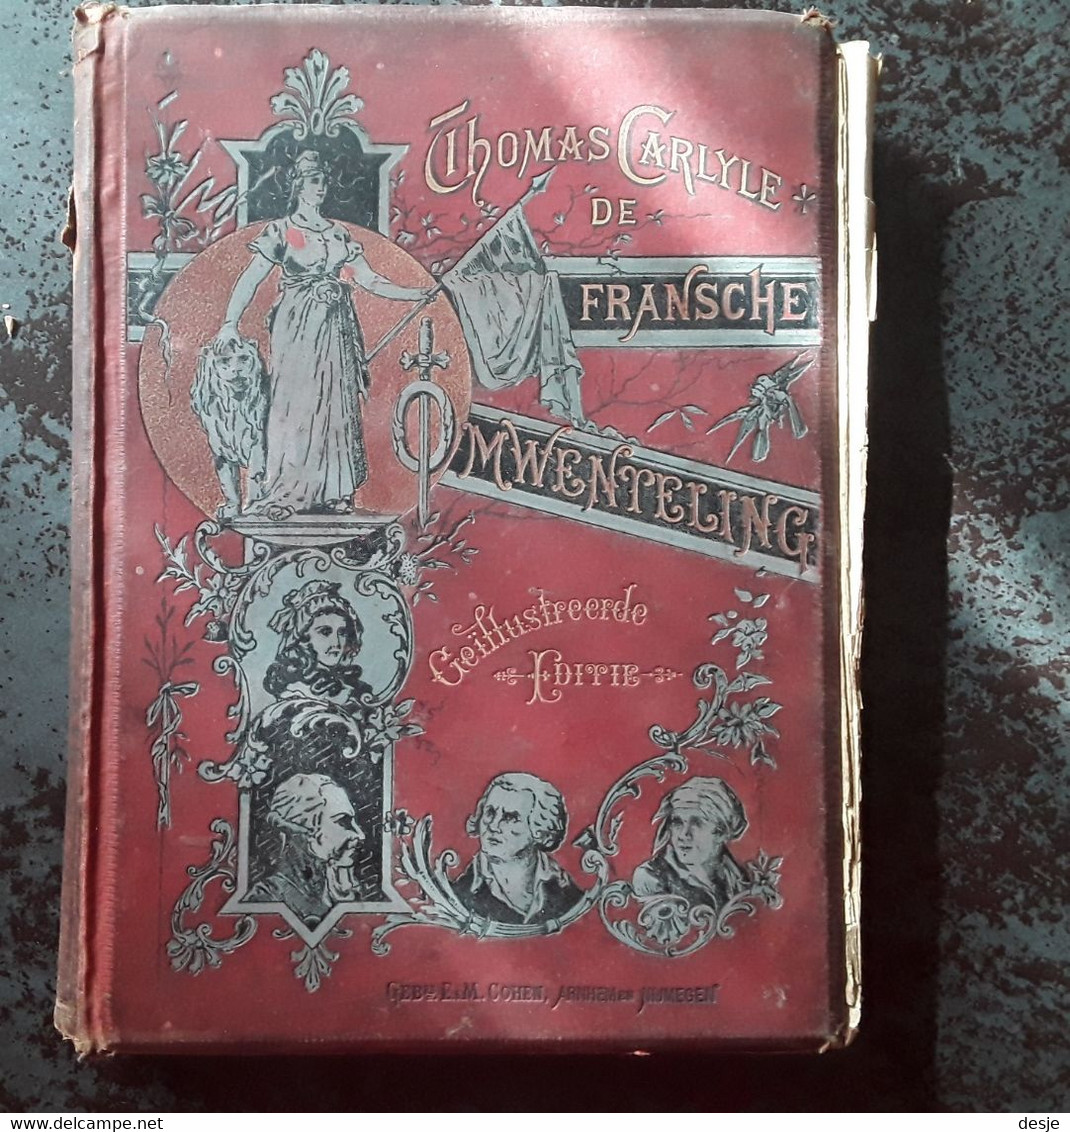 De Fransche Omwenteling Door Thomas Carlyle,tweede Deel De Constitutie, 4de Herziene Druk, Rond 1900, Nijmegen, 316 Pp. - Antiguos